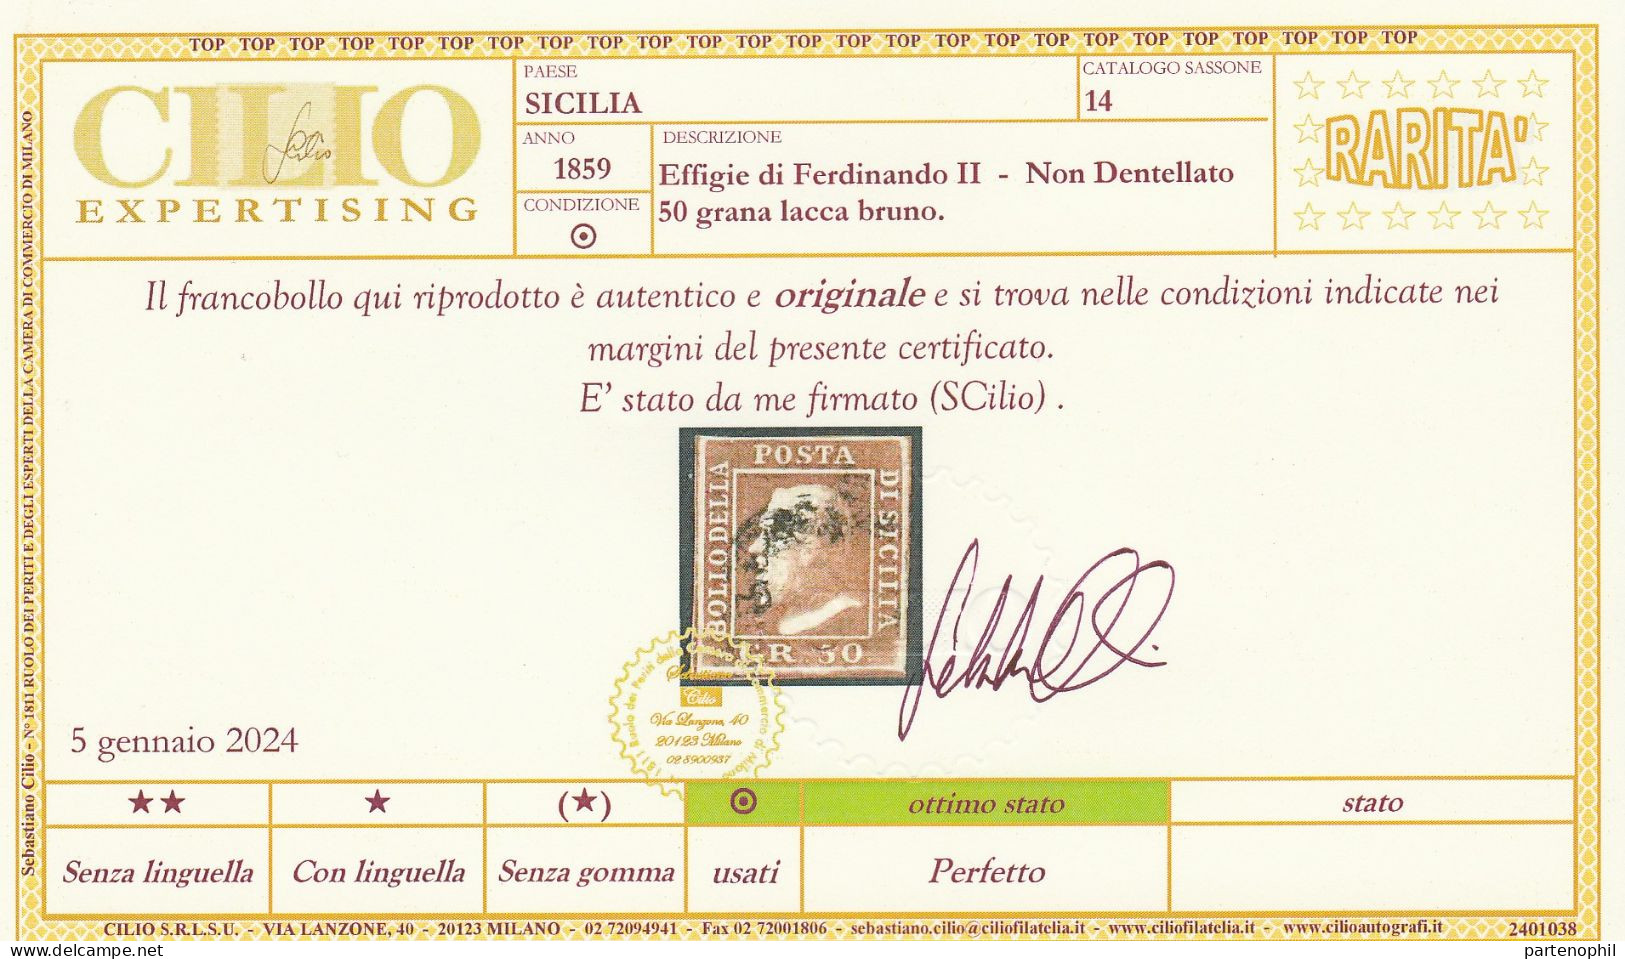 54 - Sicilia 1859 - 50 Gr. Lacca Bruno N. 14. Firmato E. E A. Diena, Oliva. Cert. Cilio. Cat. € 12000,00. Molto Bello, - Sizilien